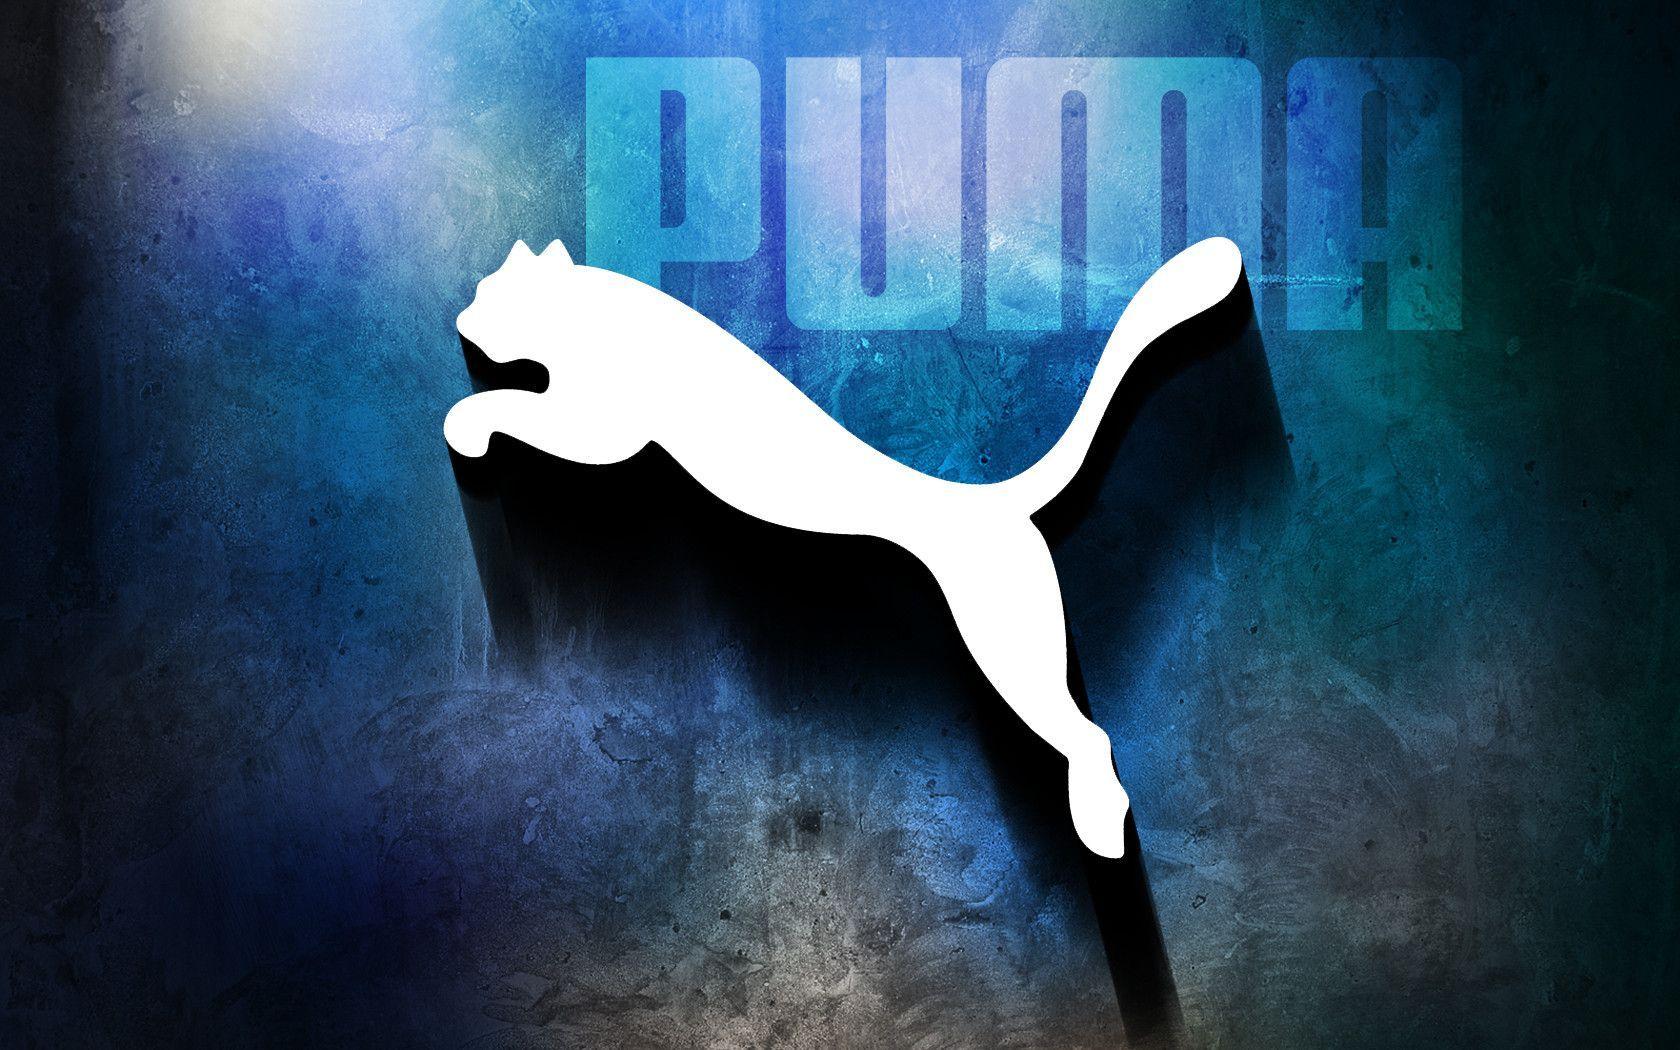 Blue Puma Logo - Puma Logo Wallpaper